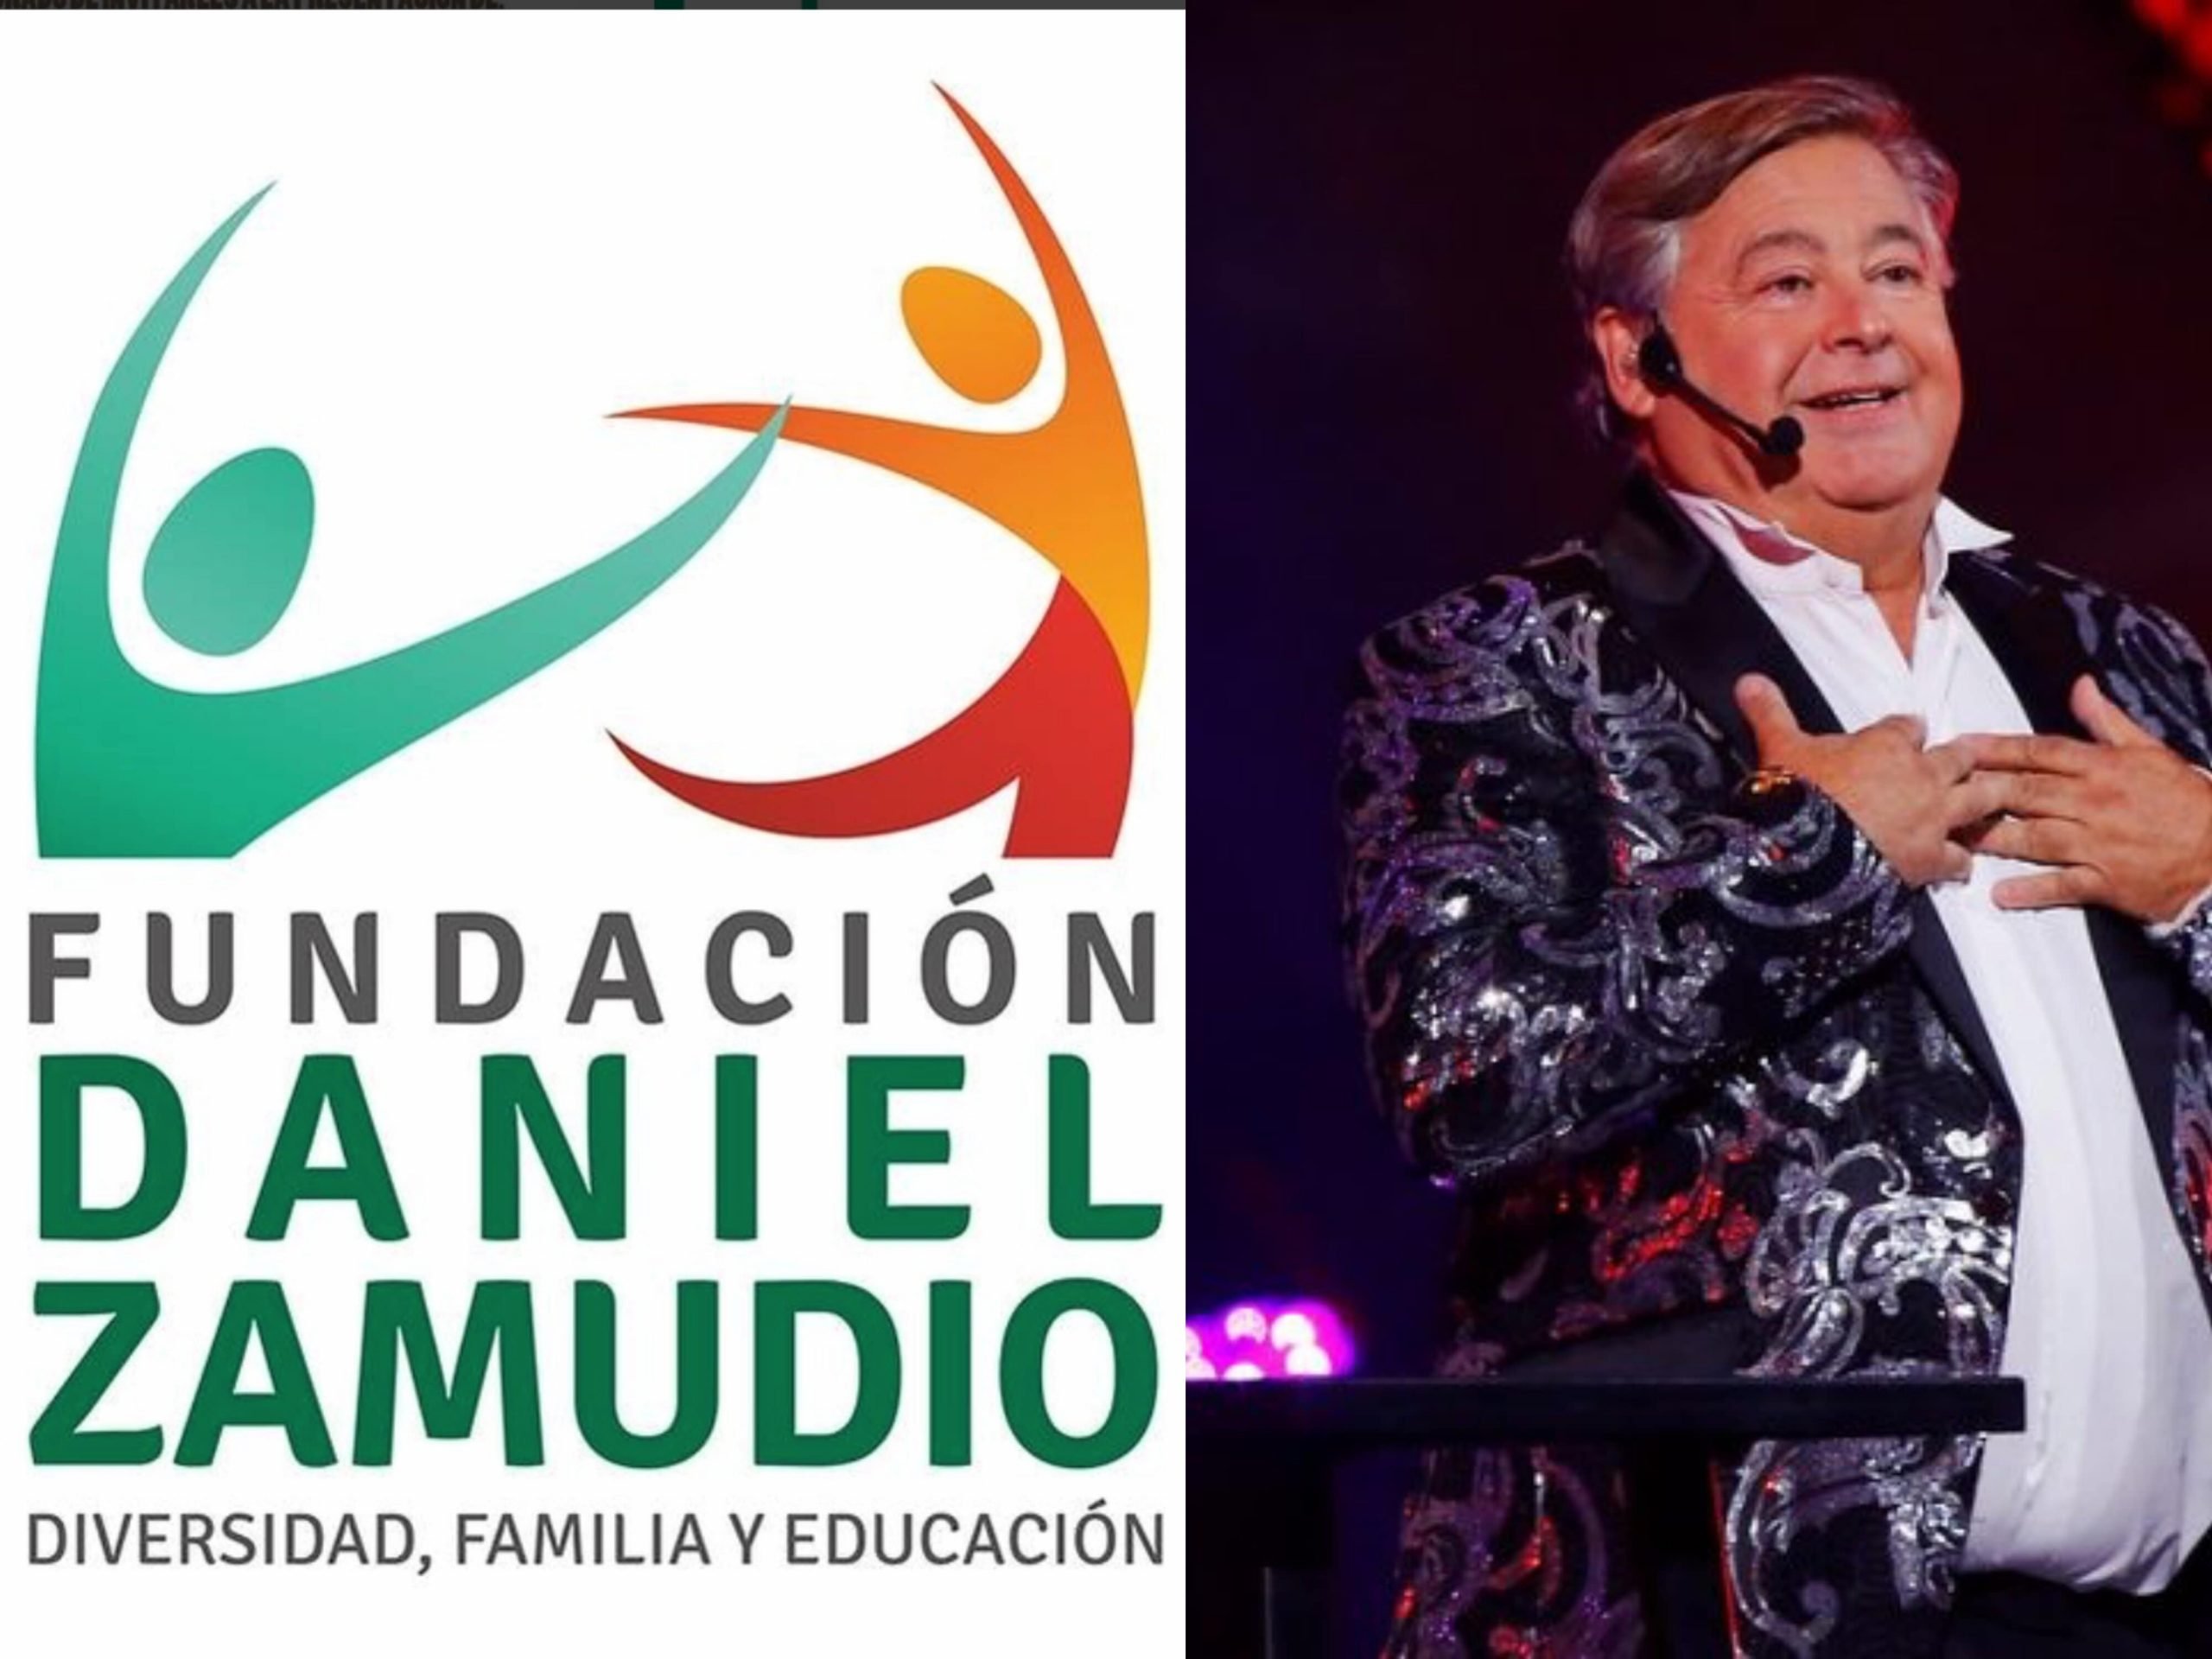 Fundación Daniel Zamudio acusa que Belloni quiso «limpiar su imagen y borrar años de dichos LGTBfóbicos»